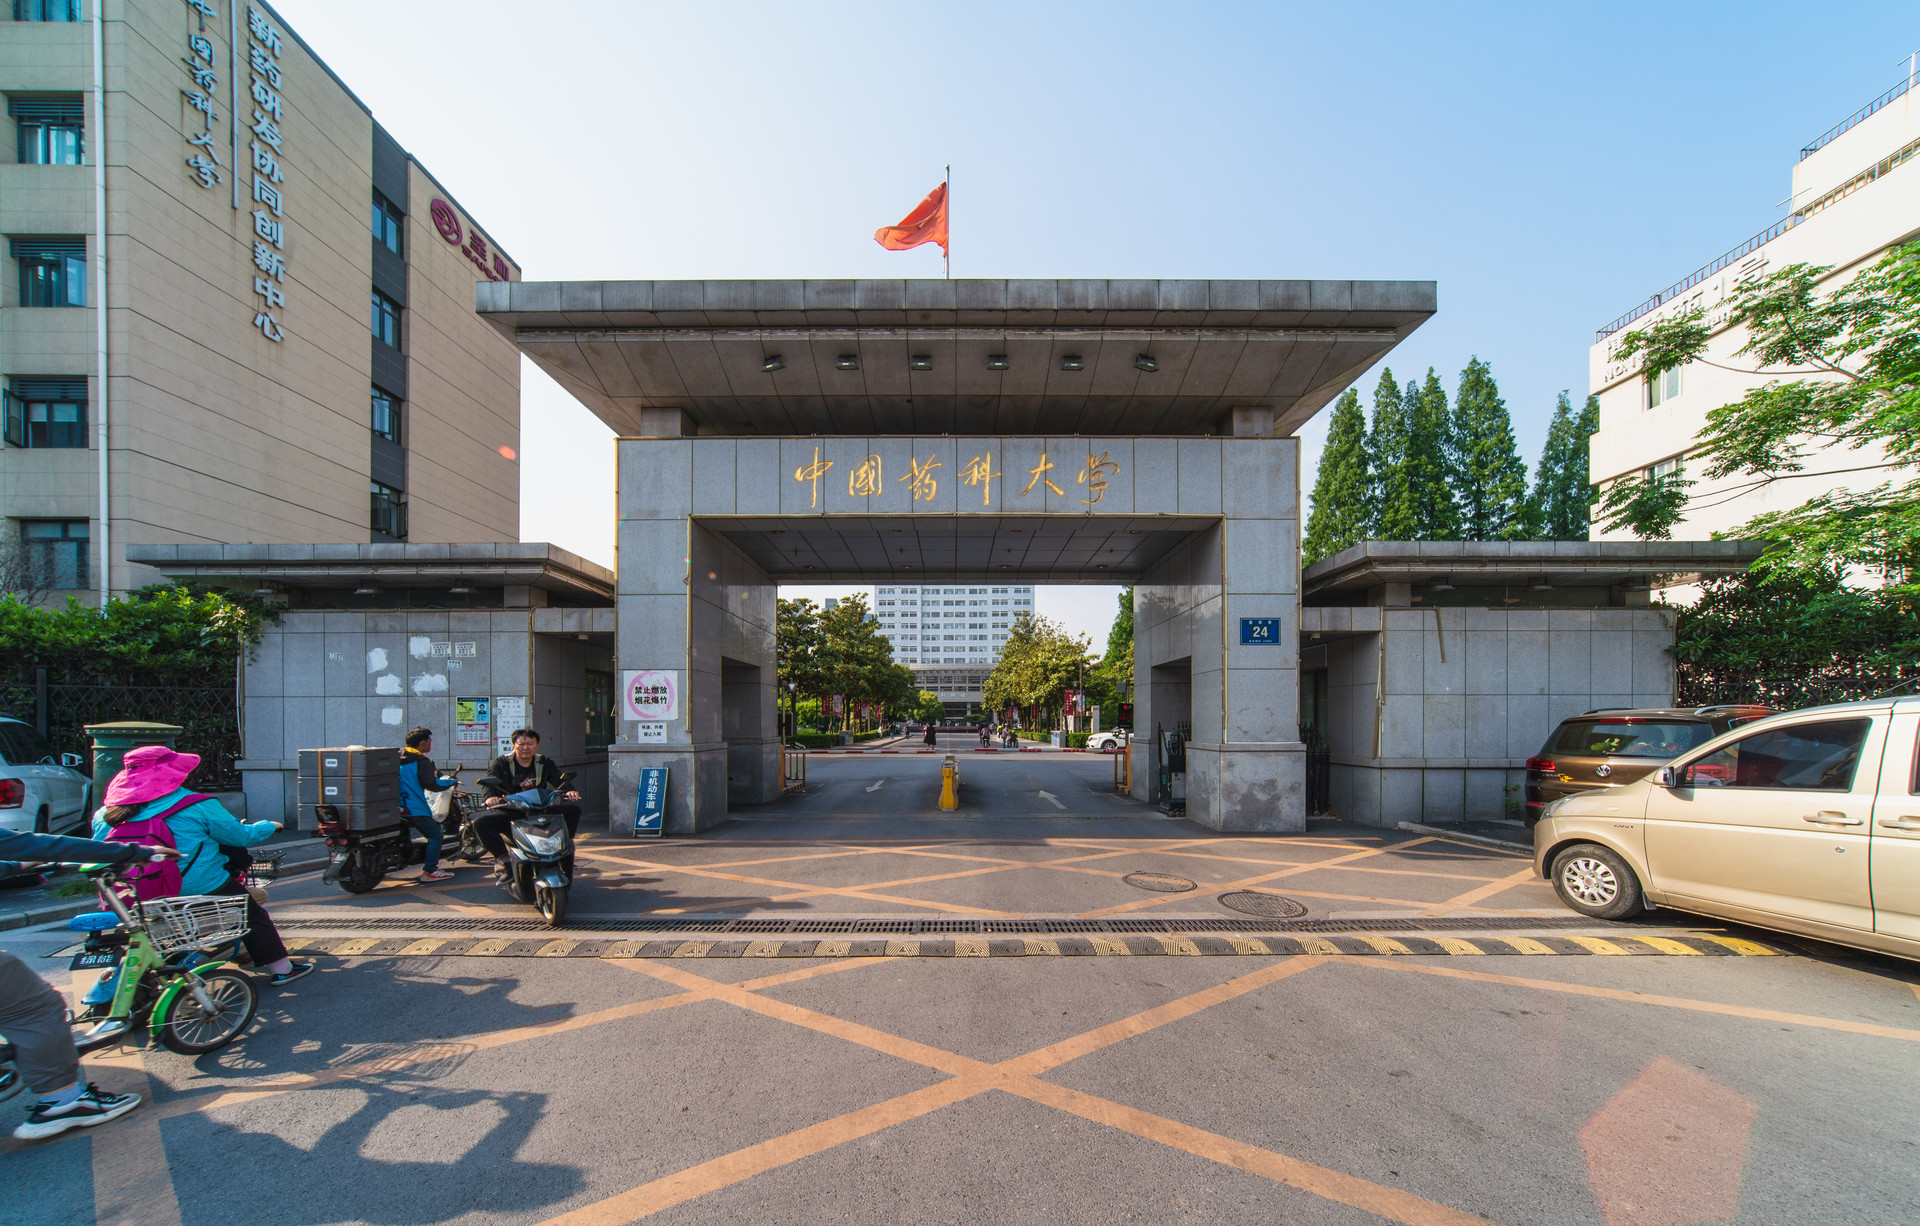 中国共产主义青年团北京卫生职业学院第一次代表大会胜利召开_建设